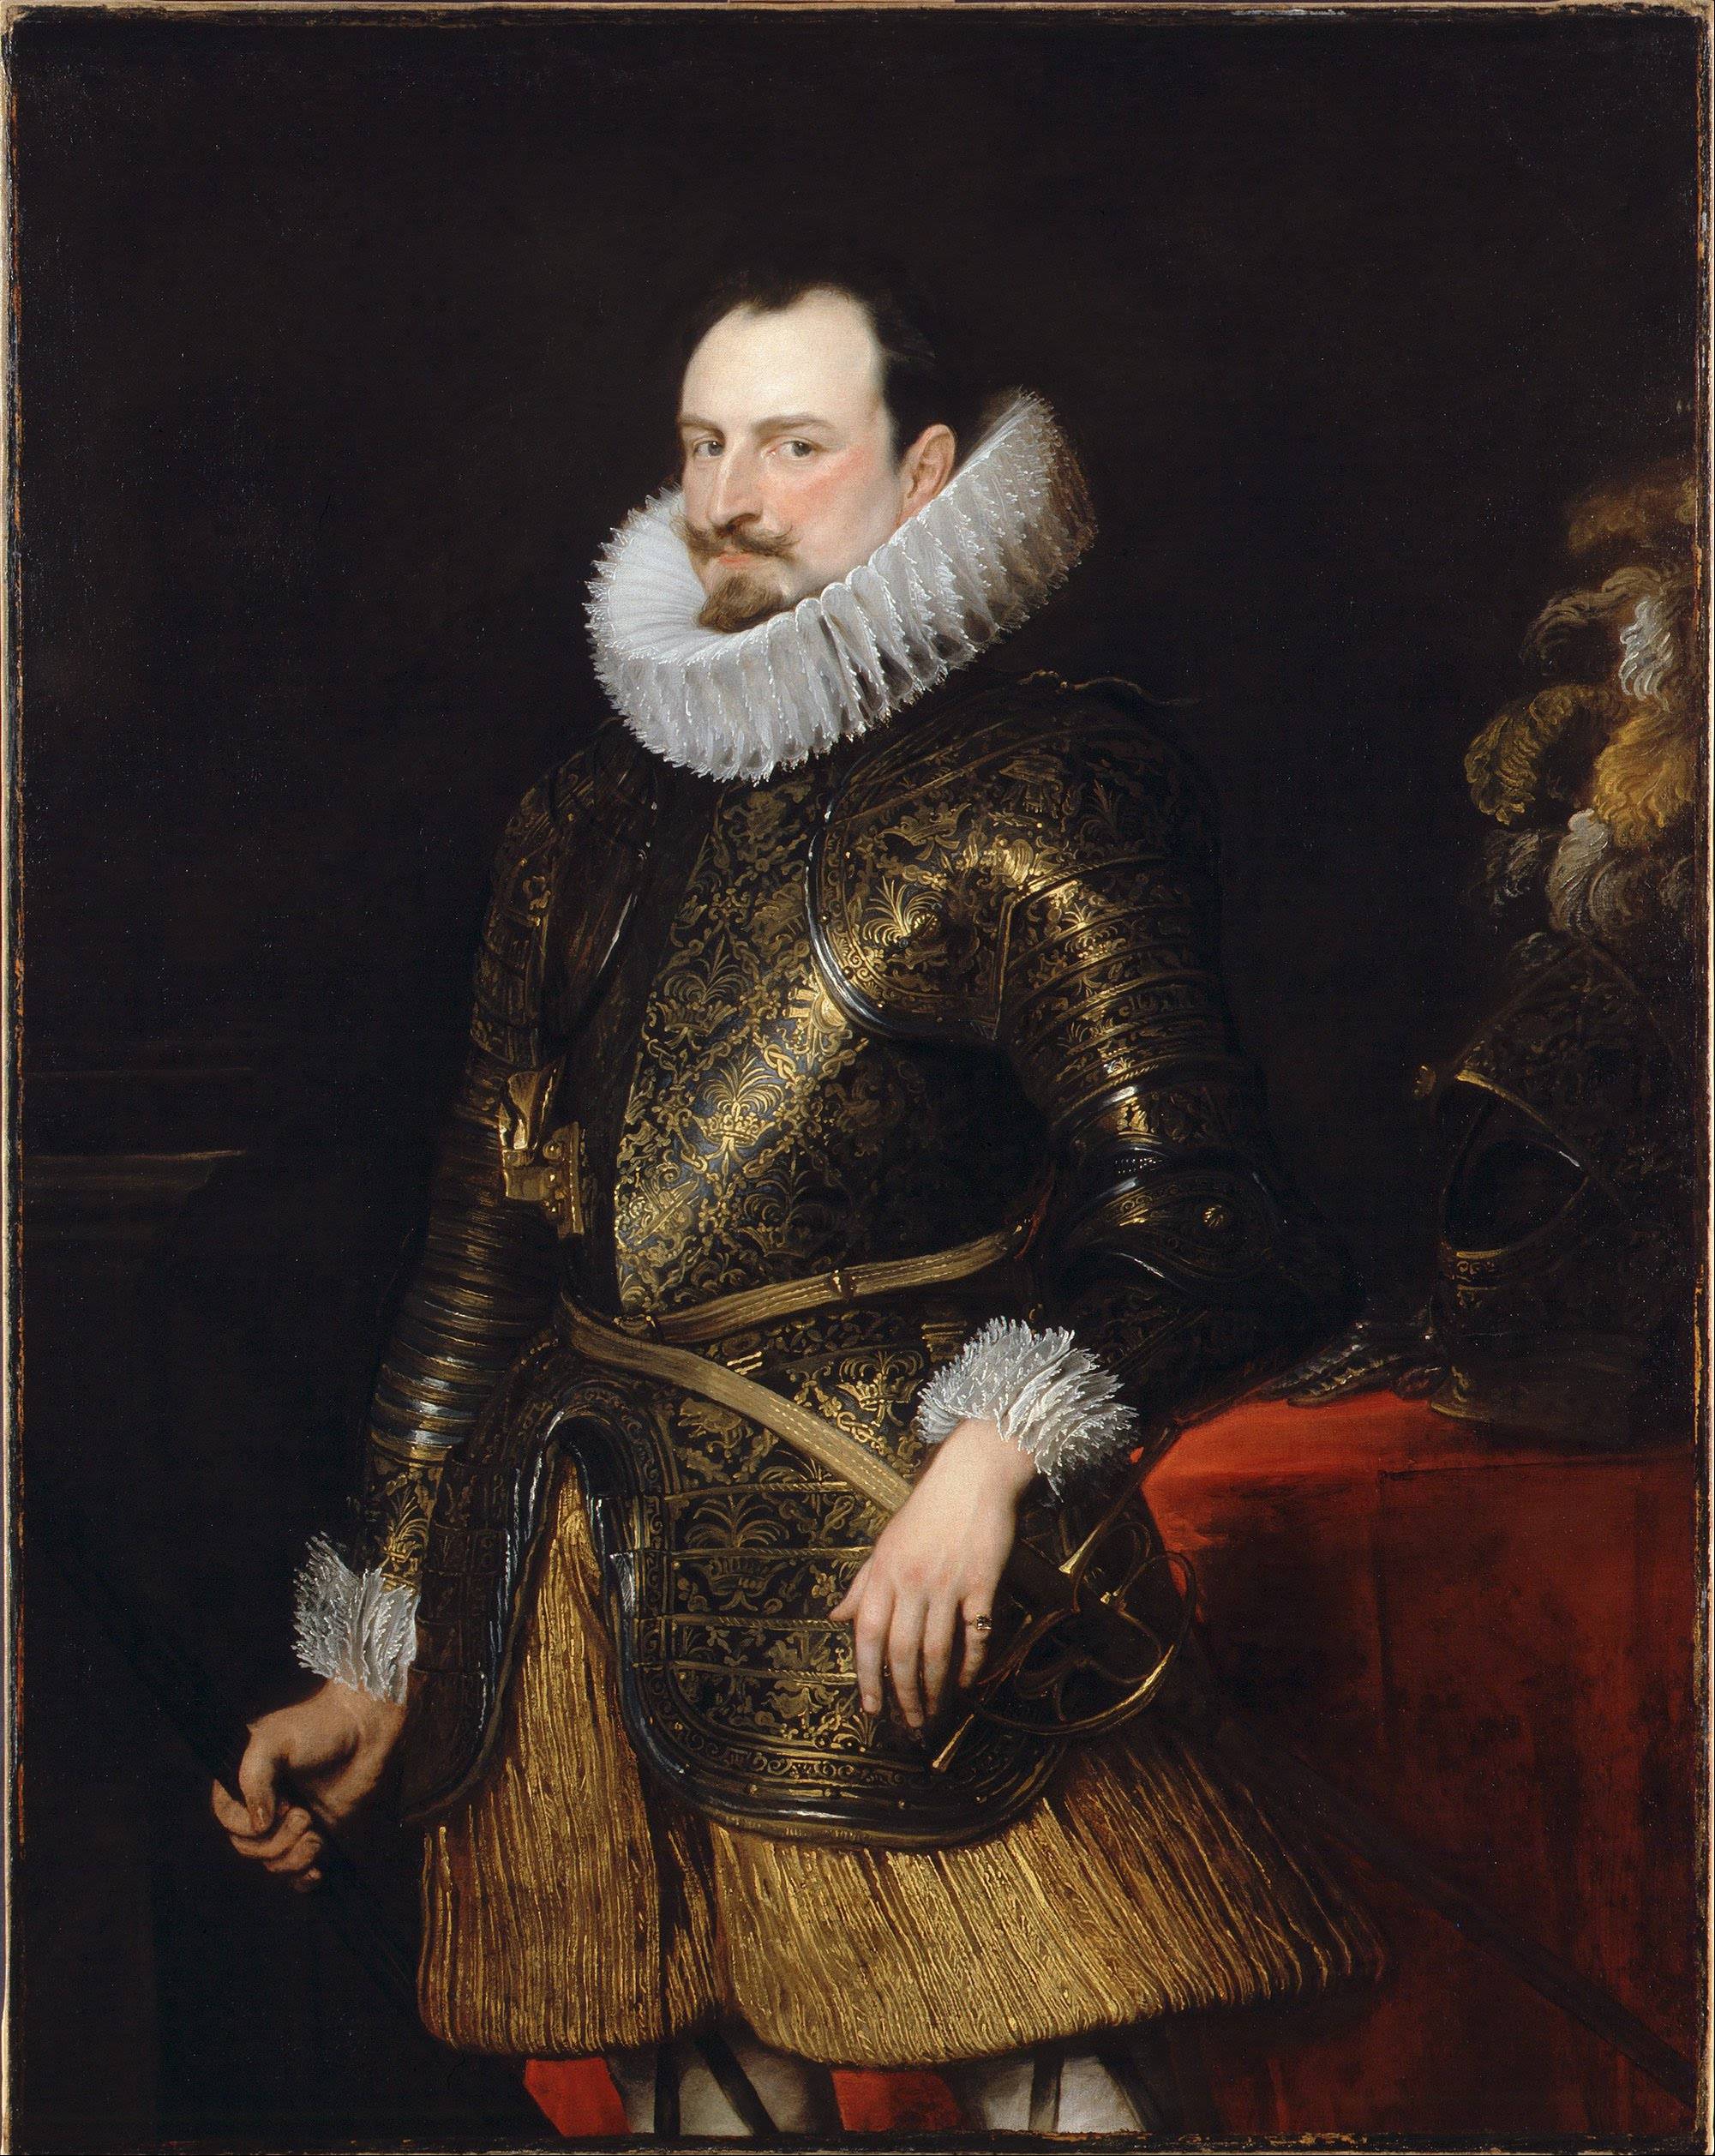 Anthony van Dyck (1624)